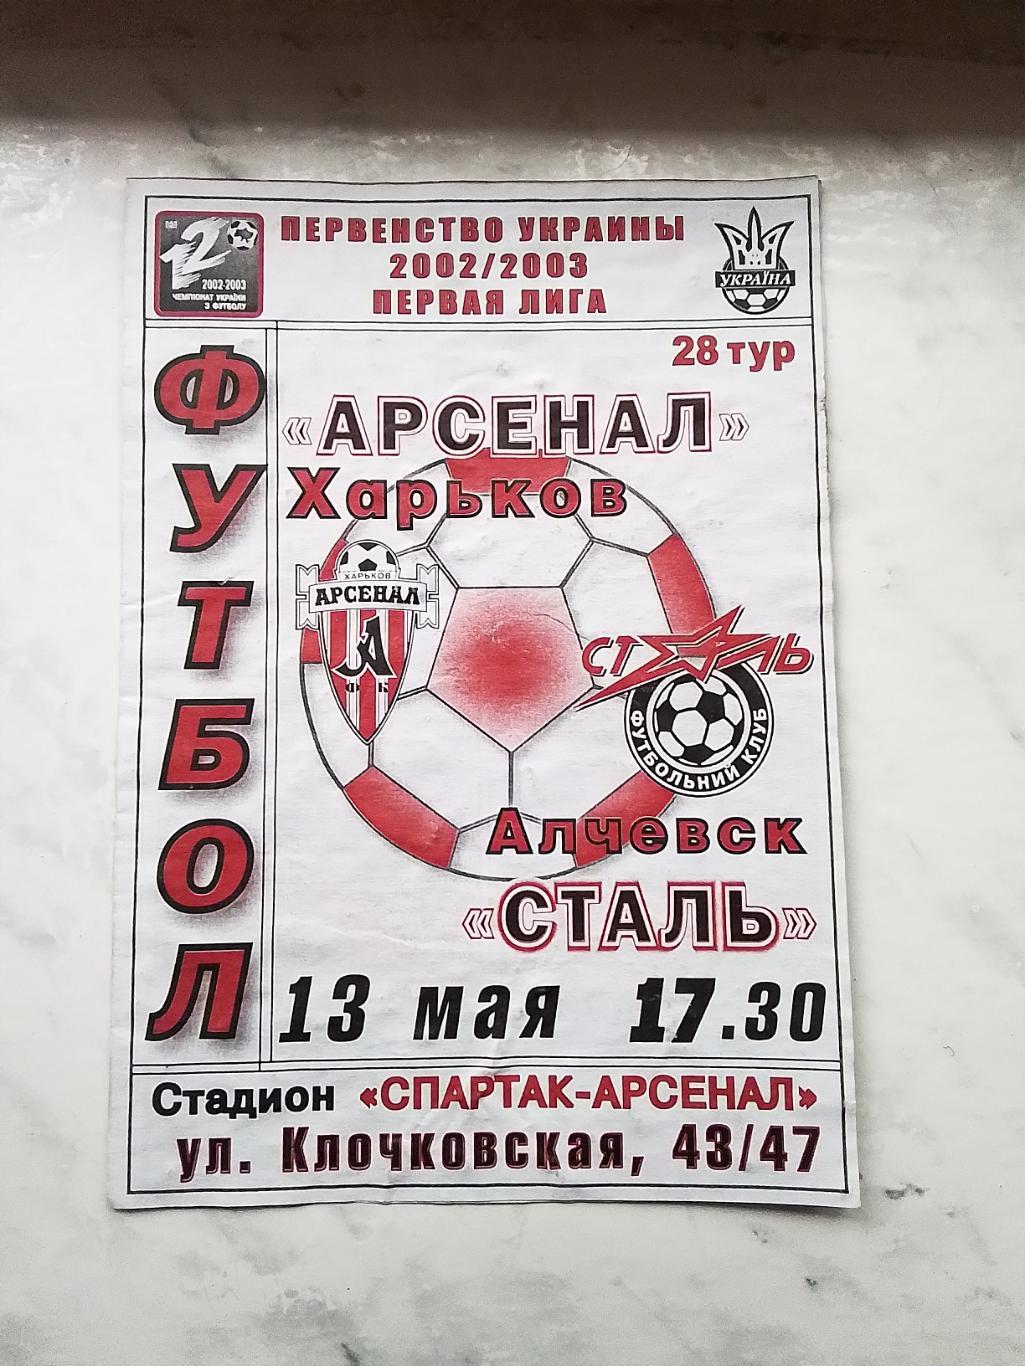 Арсенал Харьков - Сталь Алчевск 2002 - 2003